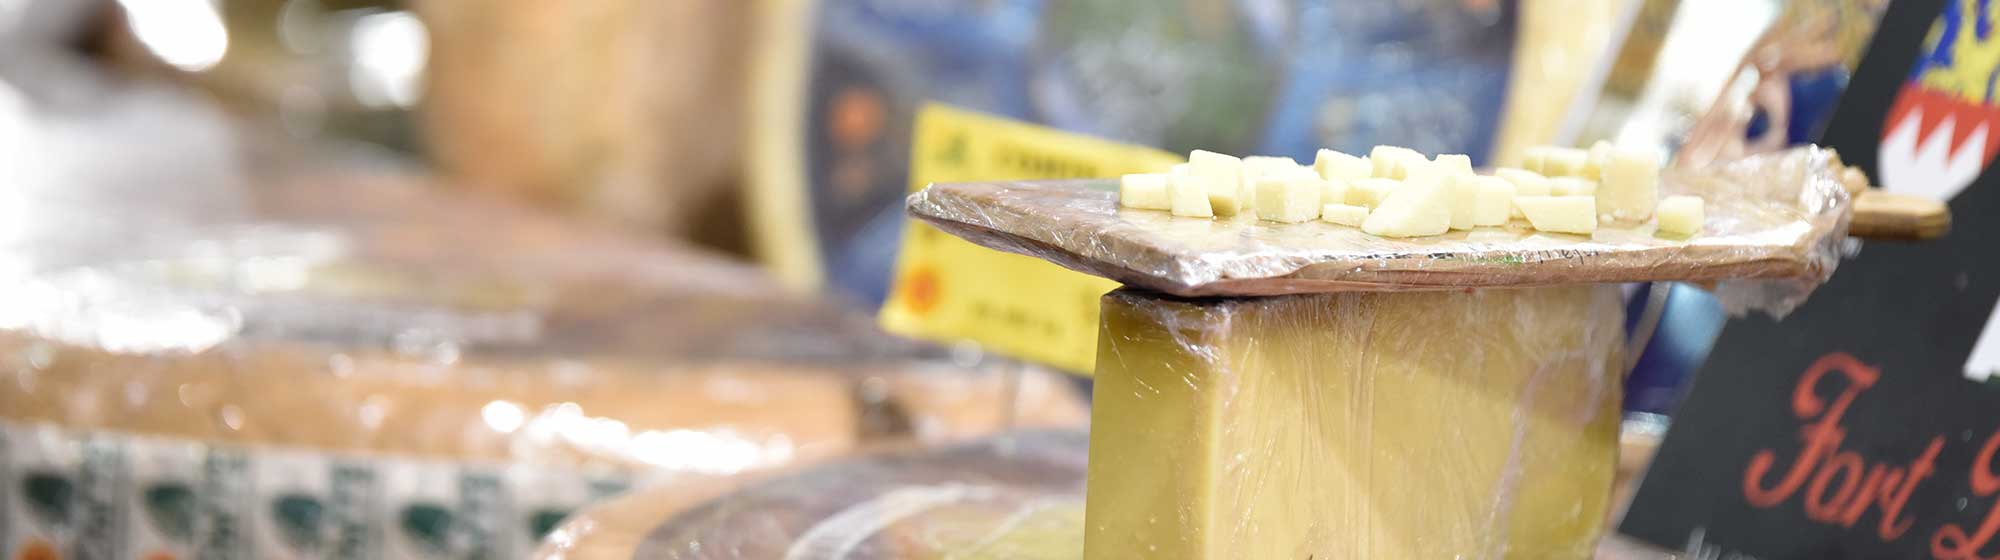 morceaux de fromage à déguster et disposés sur la meule de fromage